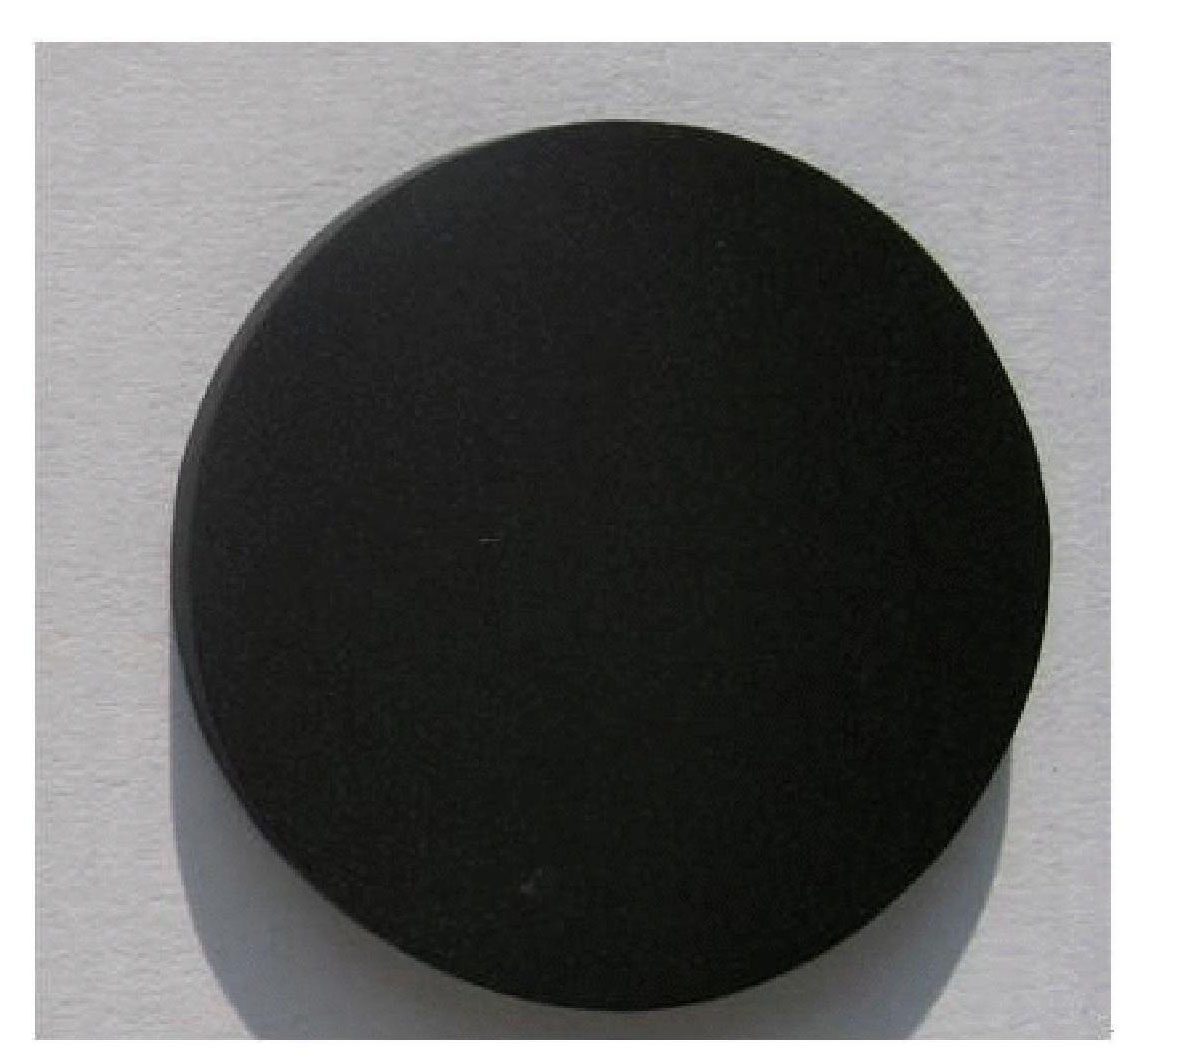 Method for preparing black titanium oxide coating on titanium surface